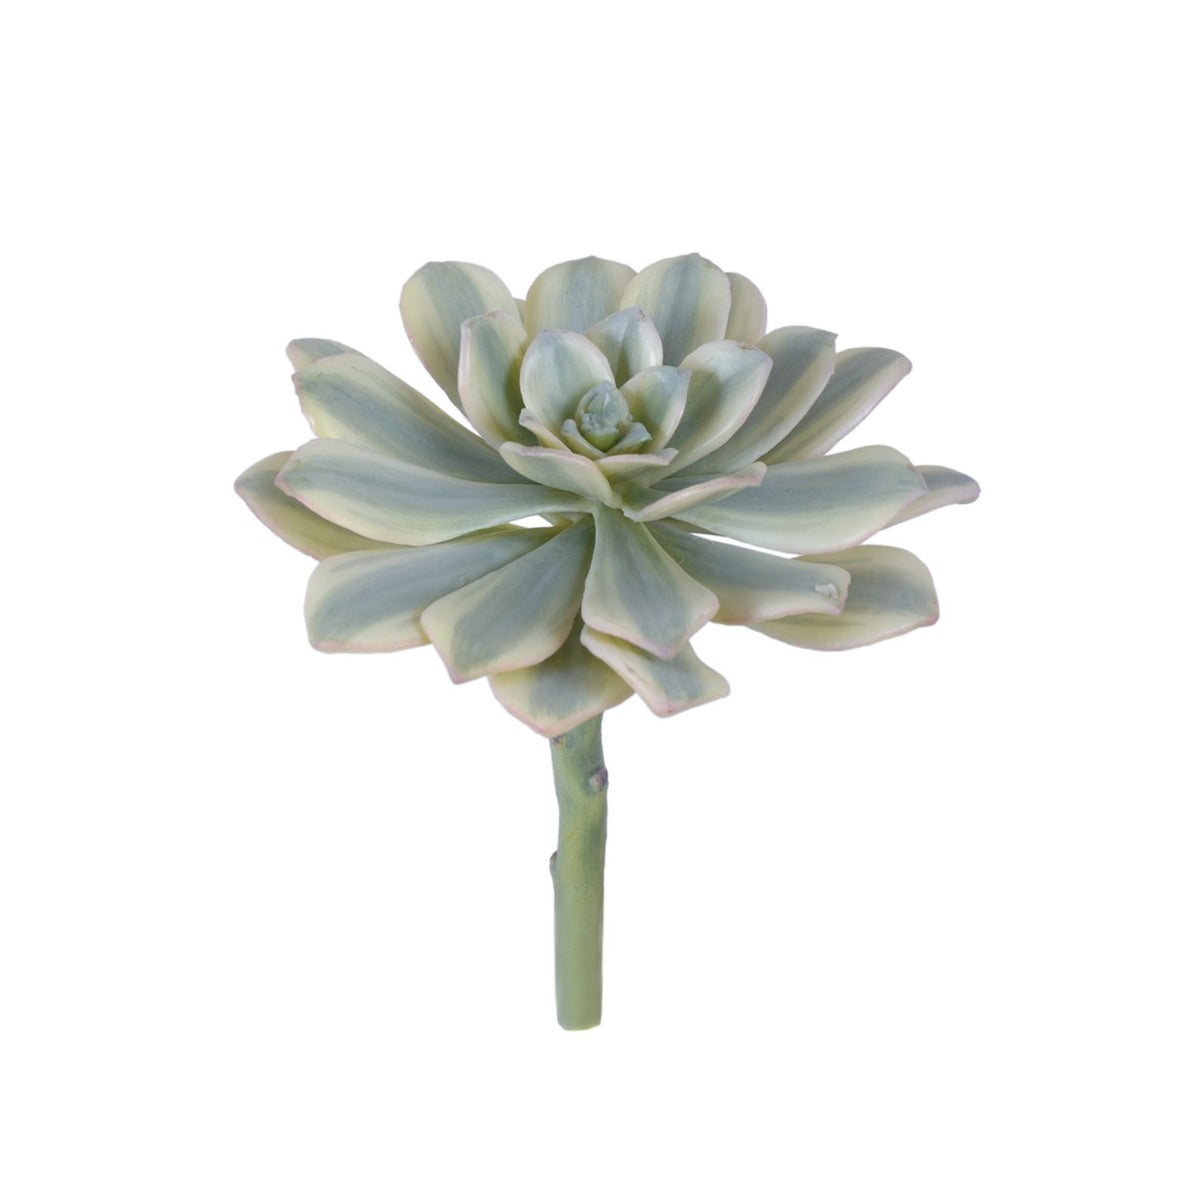 8" Striped Aeonium Sunburst Succulent